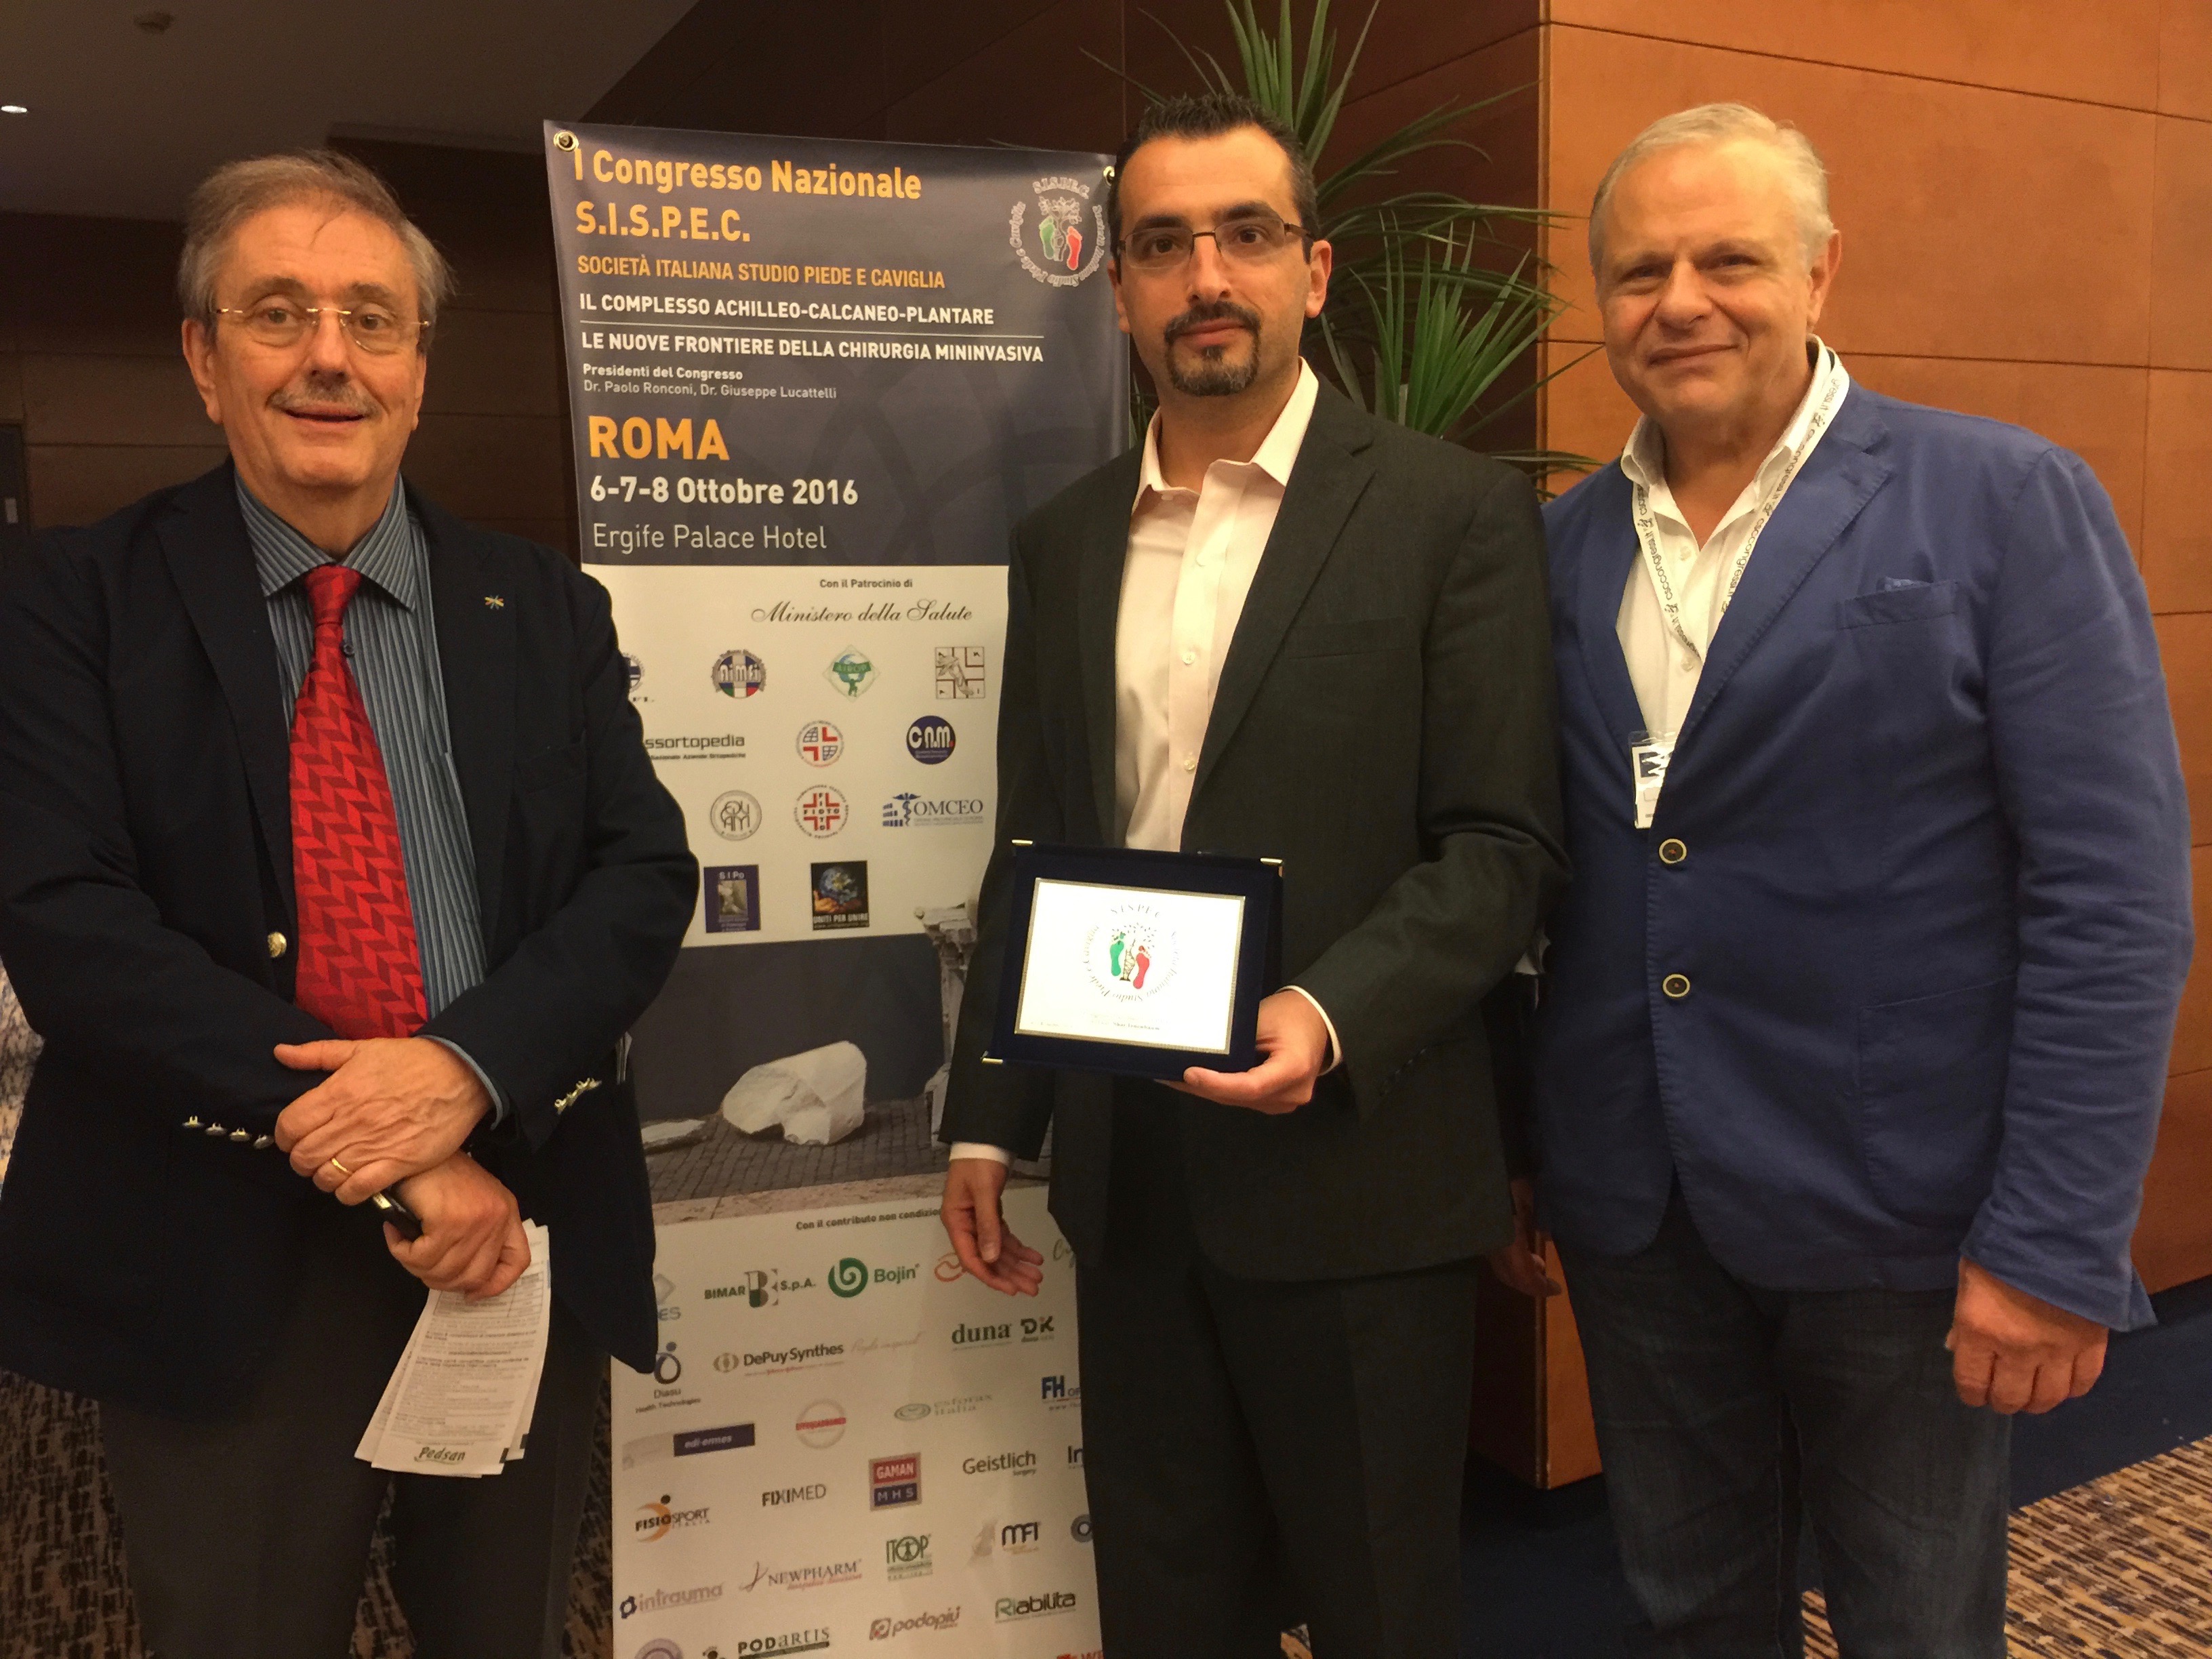 Paolo Ronconi Presidente Sispec, Shay Tenenbaum Università di Tel Hashomer Israel, Ernesto Pintore, Primo congresso Nazionale Sispec Roma 2016